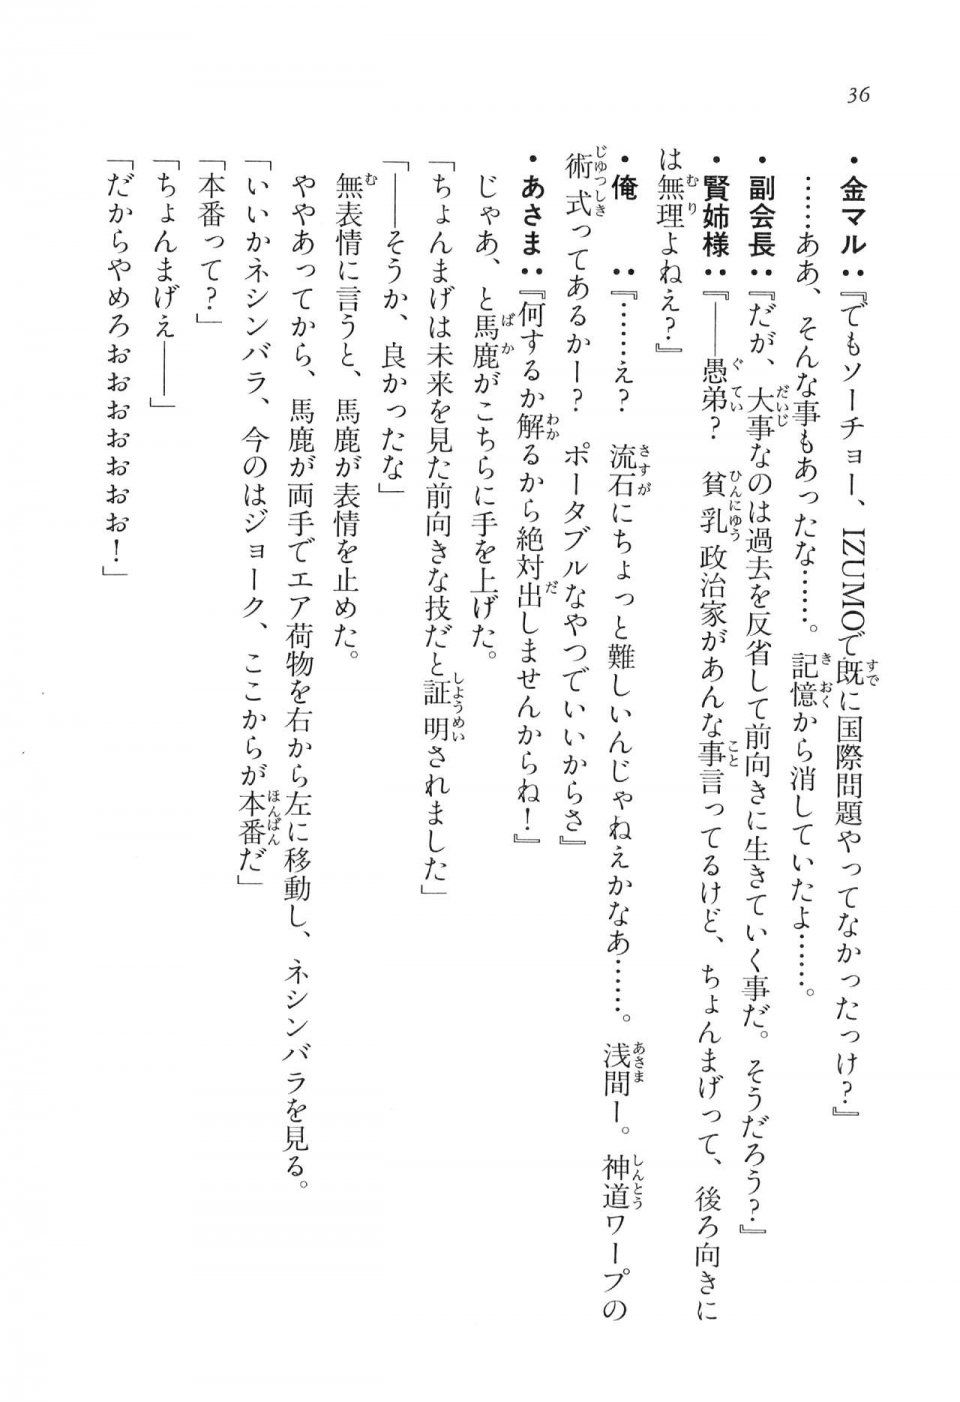 Kyoukai Senjou no Horizon LN Vol 16(7A) - Photo #36